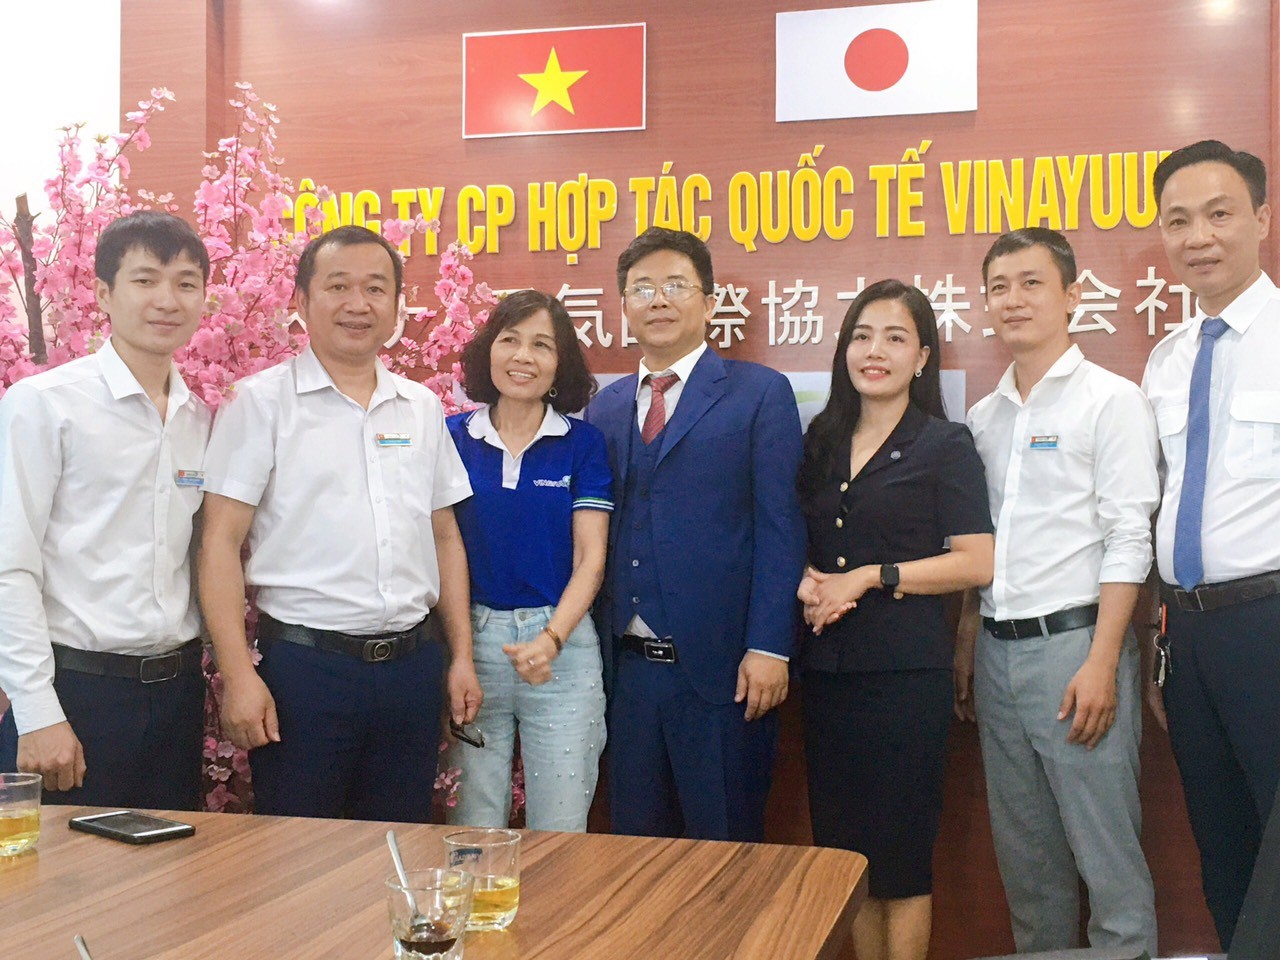 Mở rộng cơ hội học tập và việc làm trong lĩnh vực hàng không cho lao động tỉnh Nghệ An